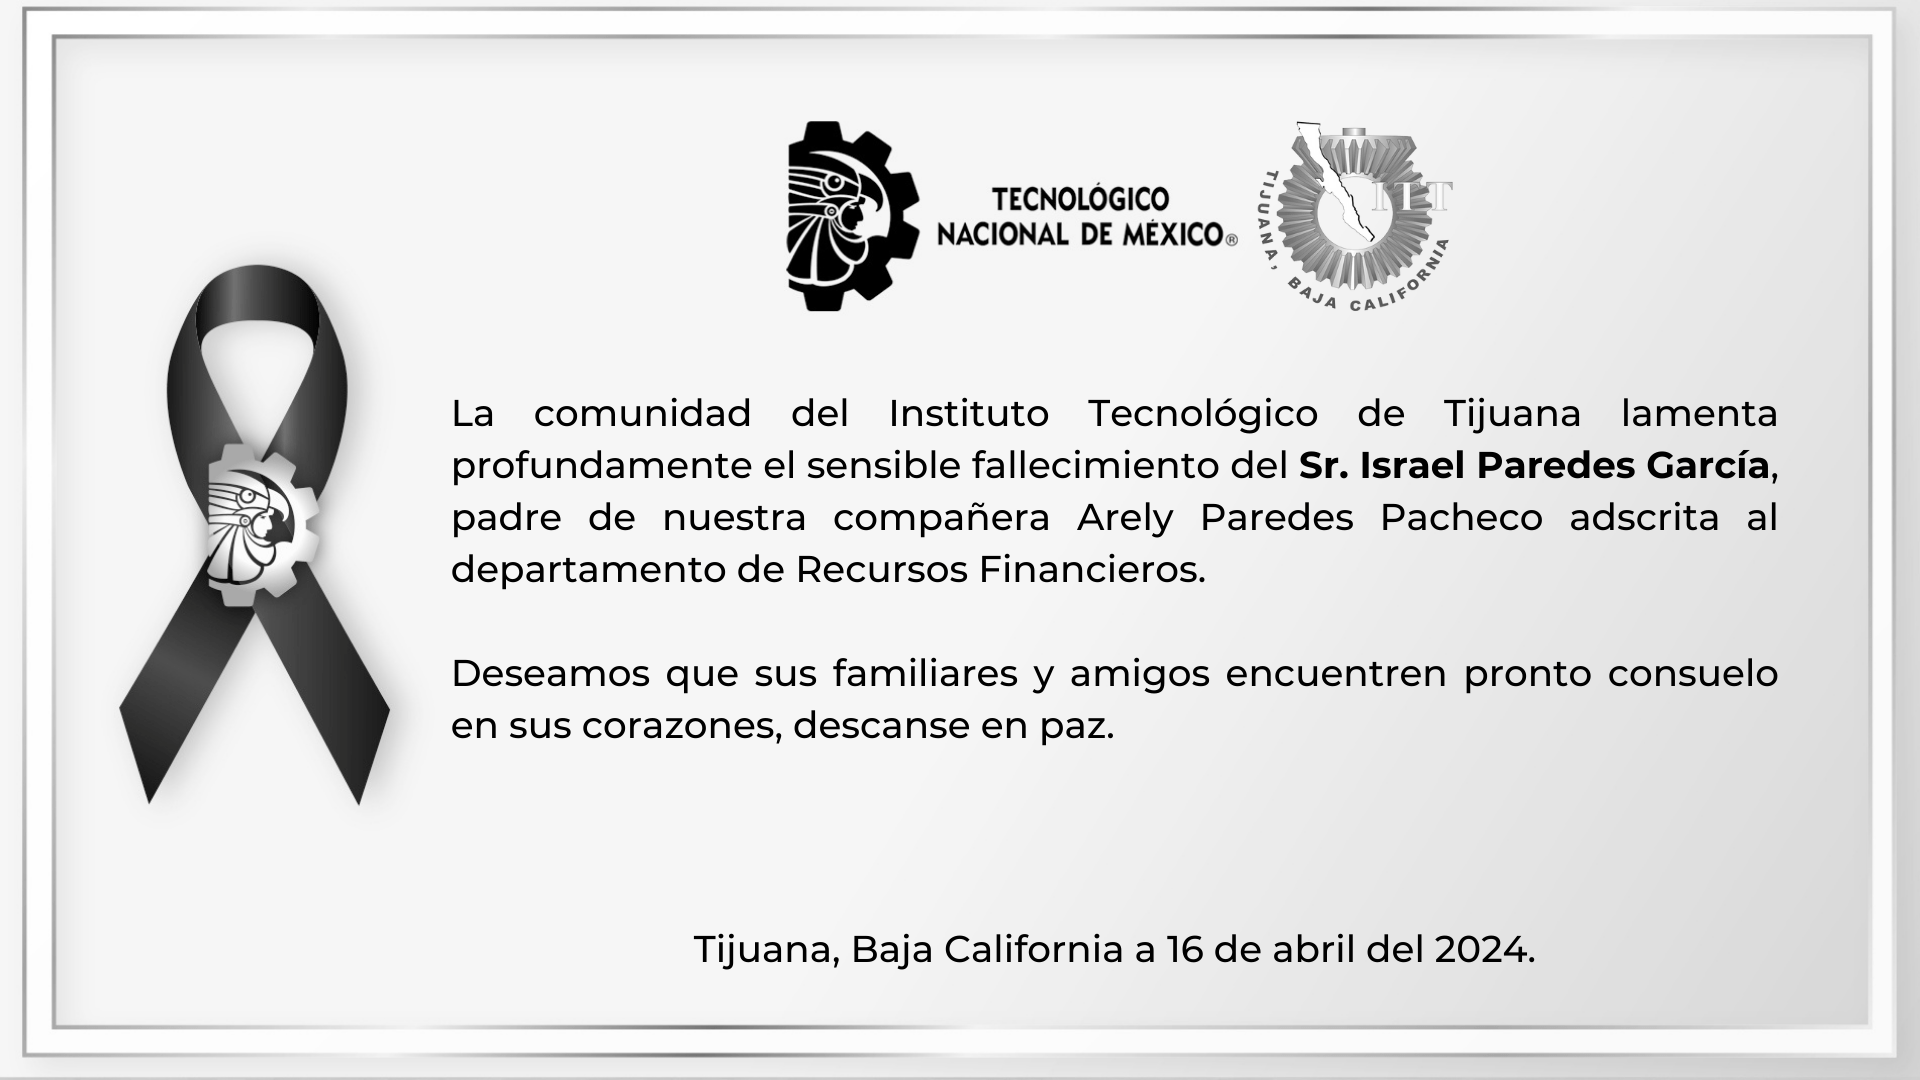 La comunidad del Instituto Tecnológico de Tijuana lamenta profundamente el sensible fallecimiento del Sr. Israel Paredes García